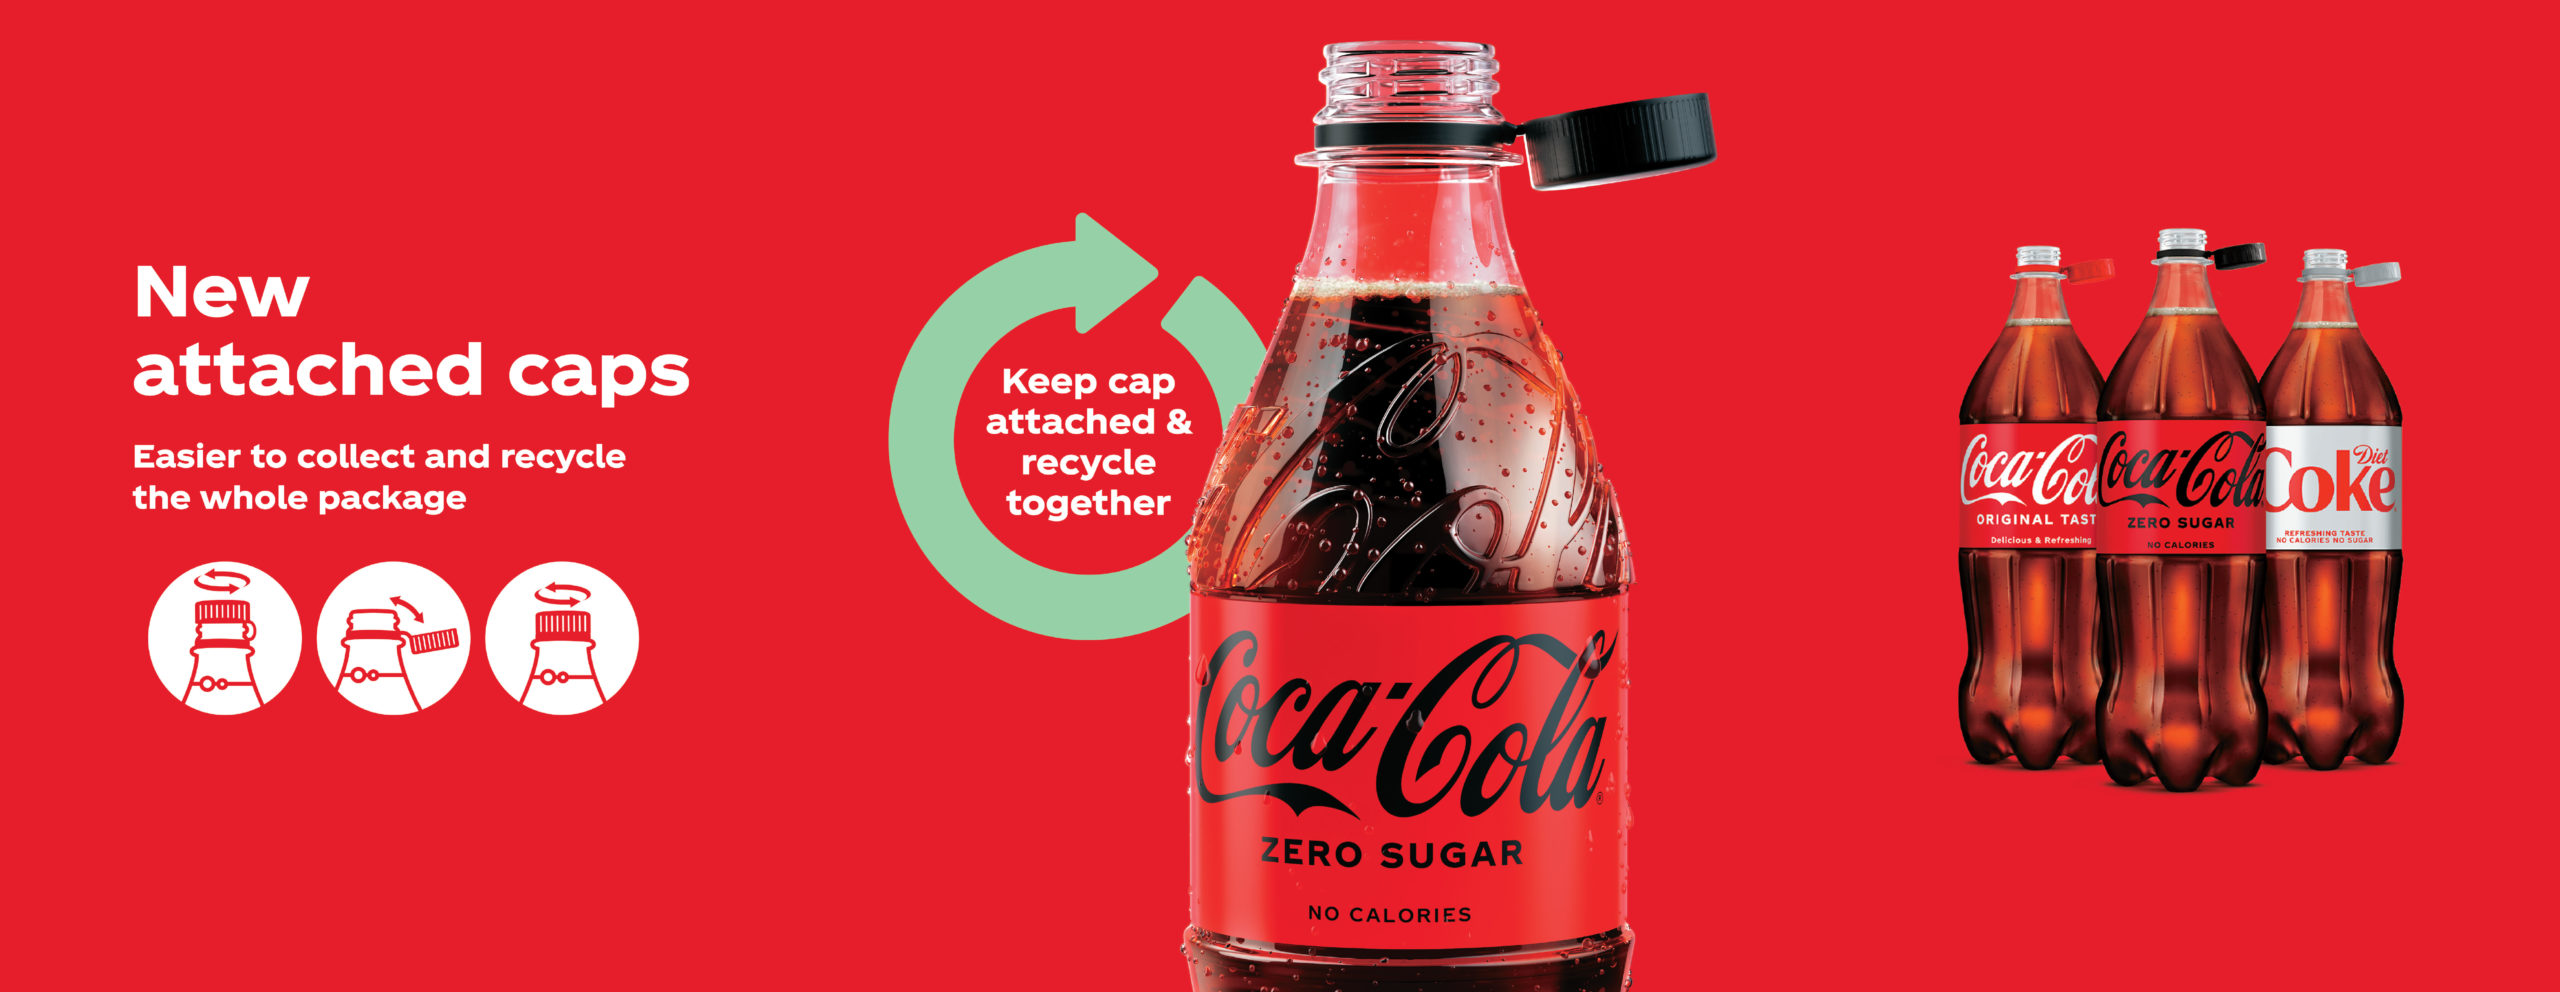 Coca-Cola, immagini che illustrano la nuova tecnologia dei tappi che restano attaccati al collo della bottiglia